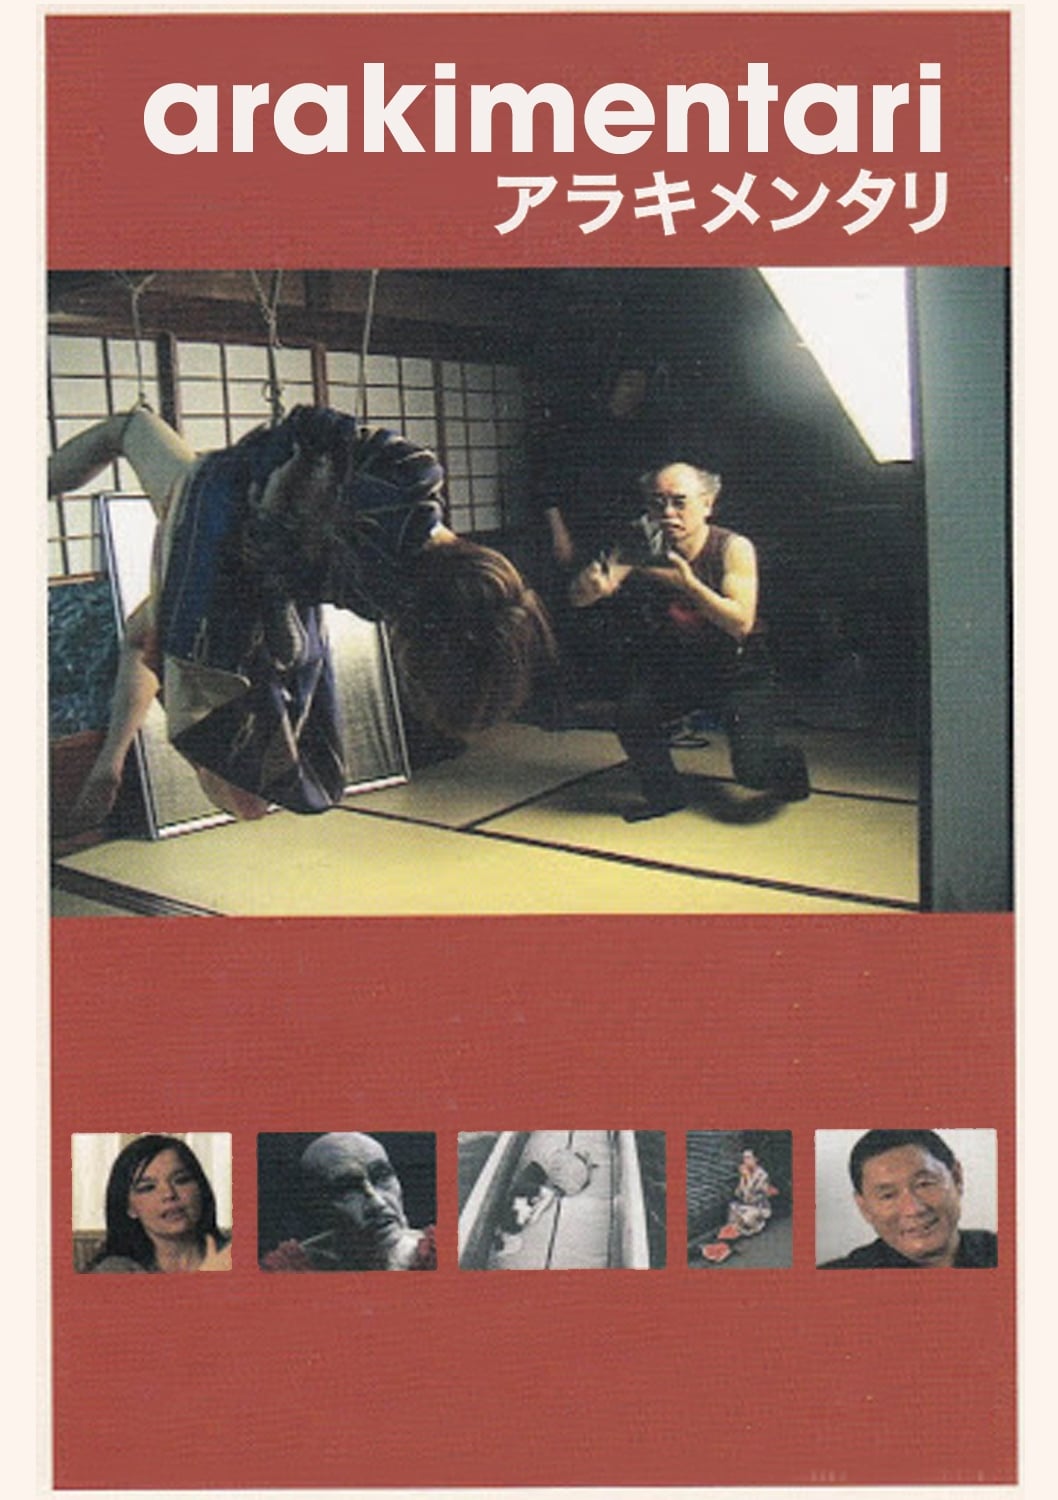 Arakimentari (2004)